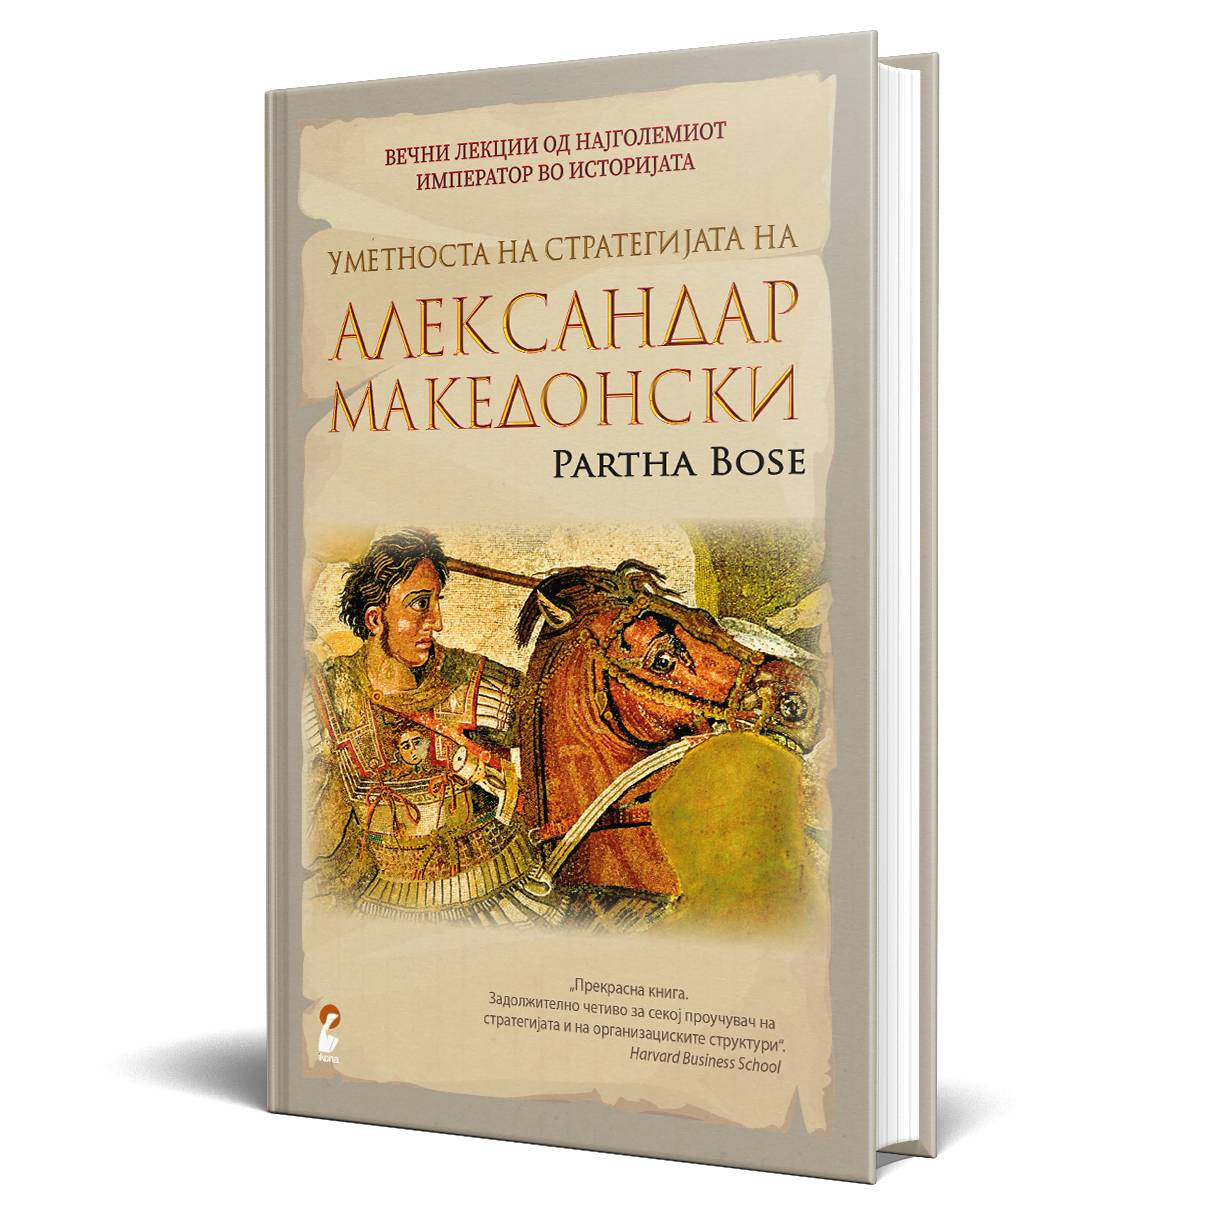 Уметноста на Стратегијата на Александар Македонски